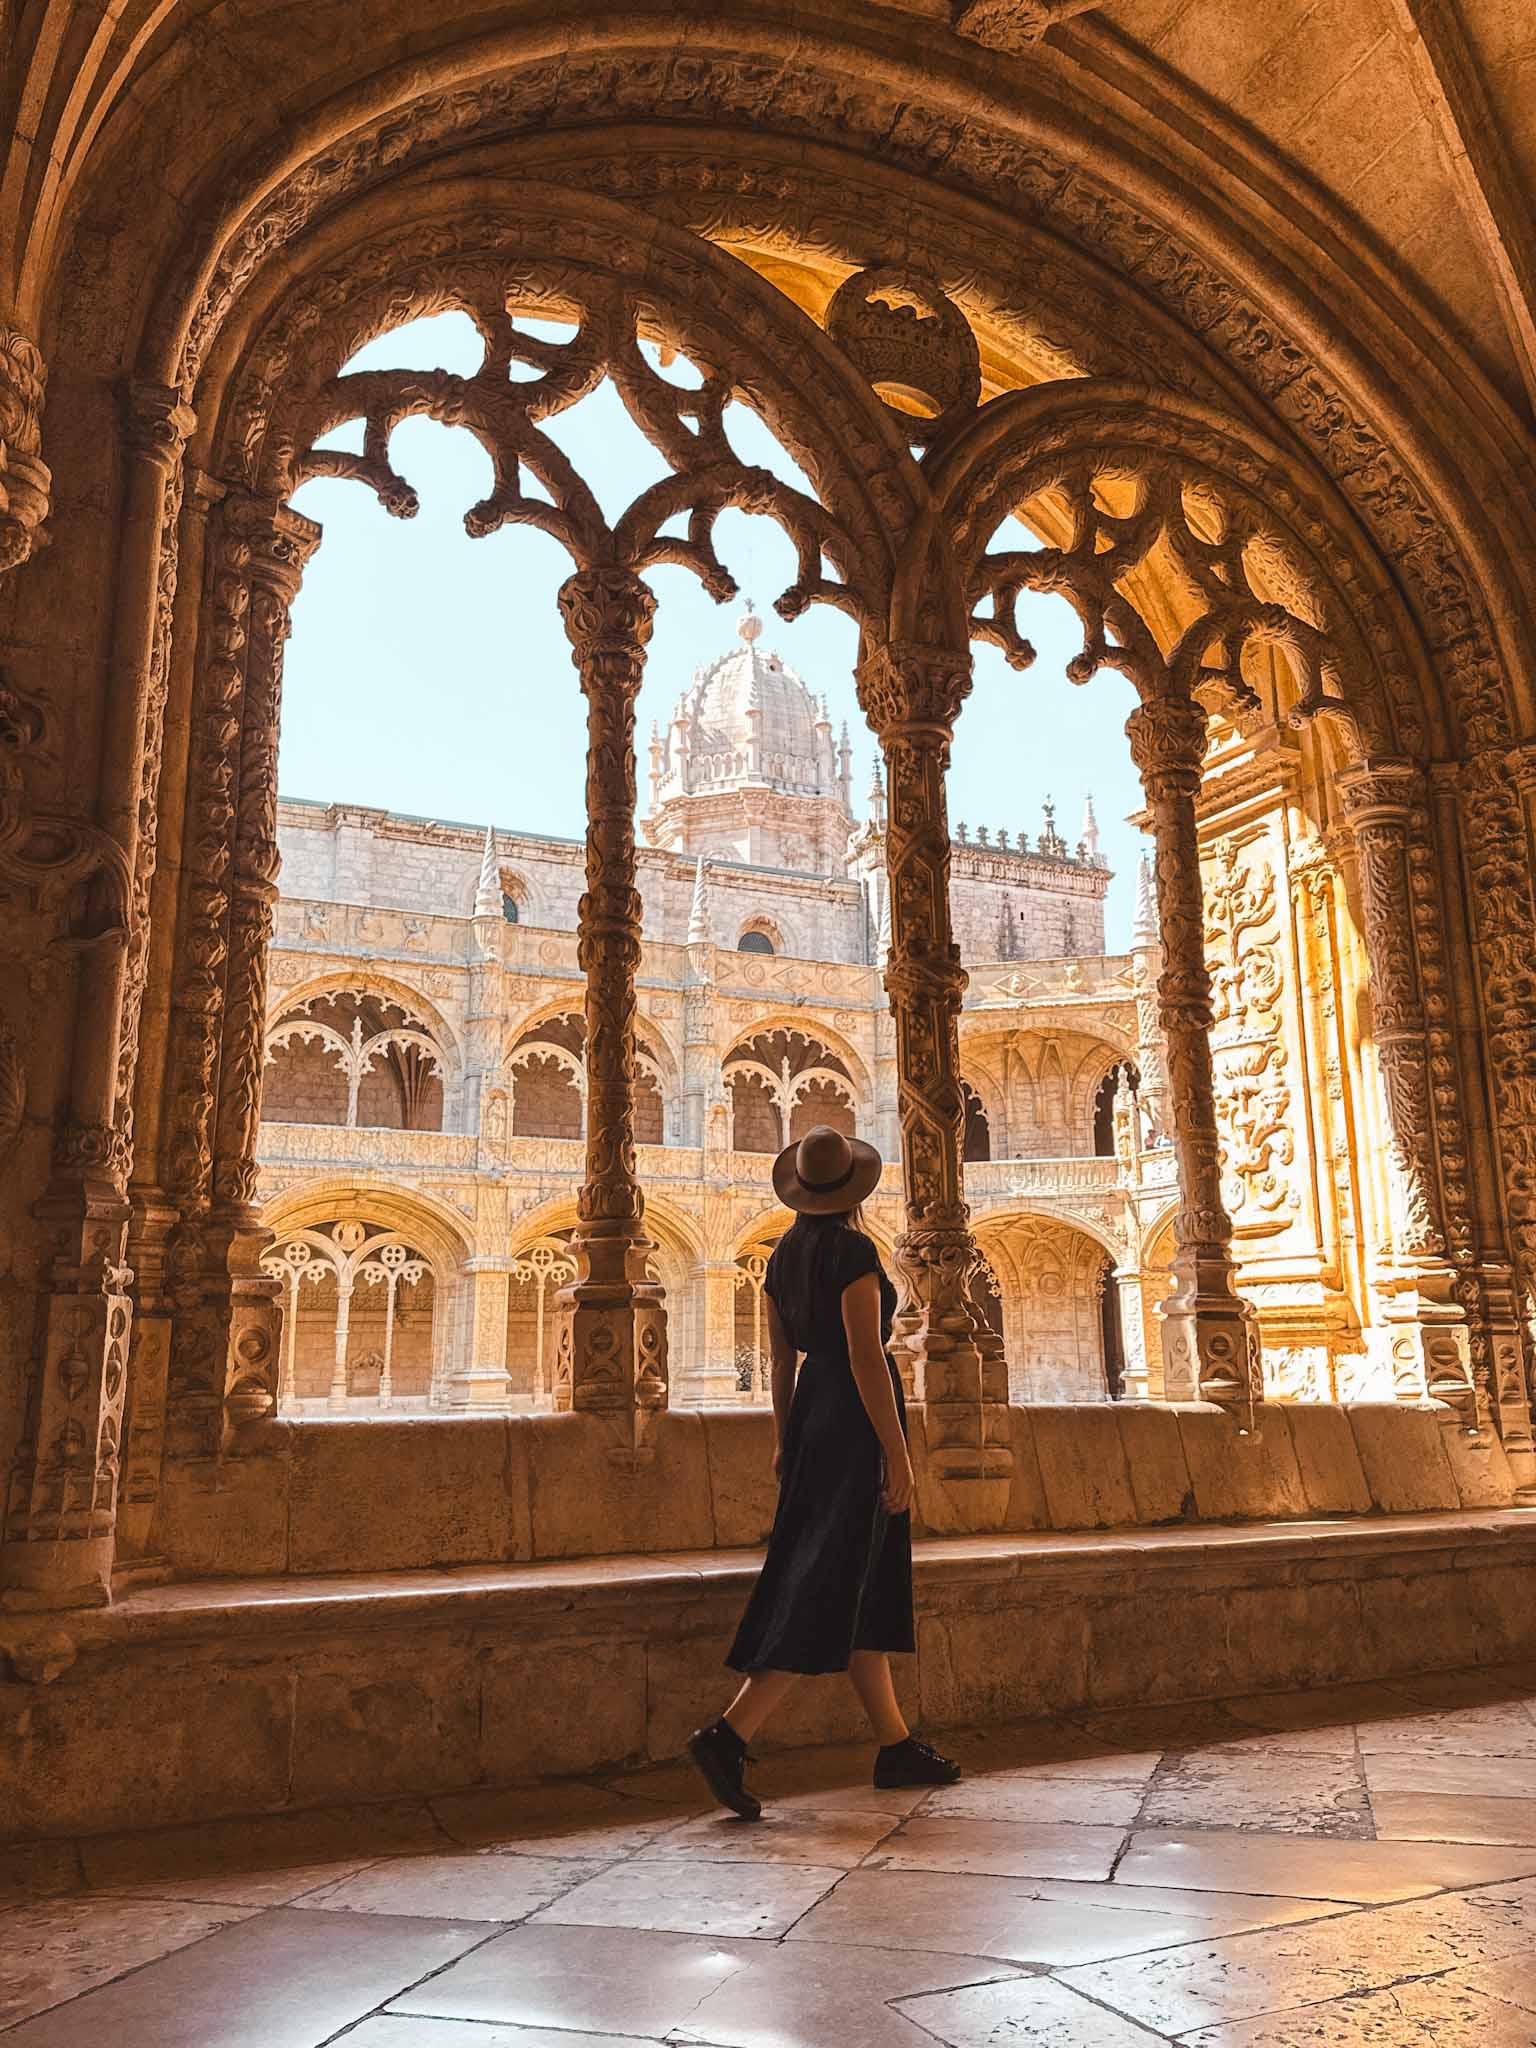 Best Instagram photo spots in Lisbon - Jerónimos Monastery